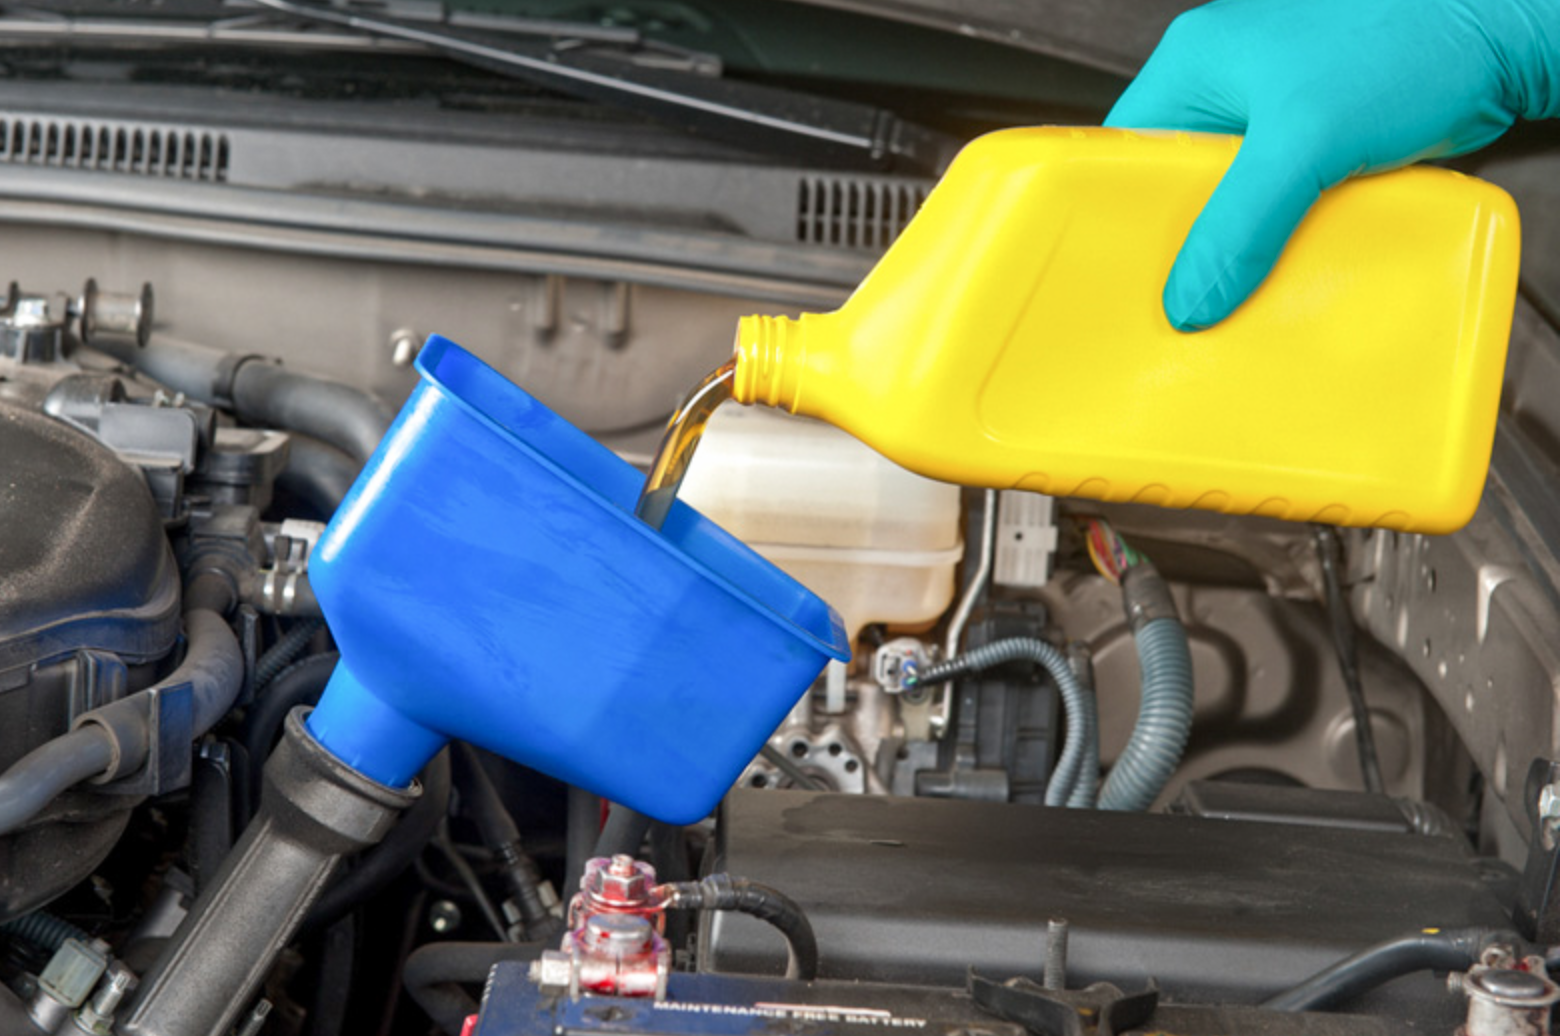 Bảo dưỡng xe trước khi đi sẽ cải thiện tình trạng tiêu hao nhiên liệu. Ảnh ST.